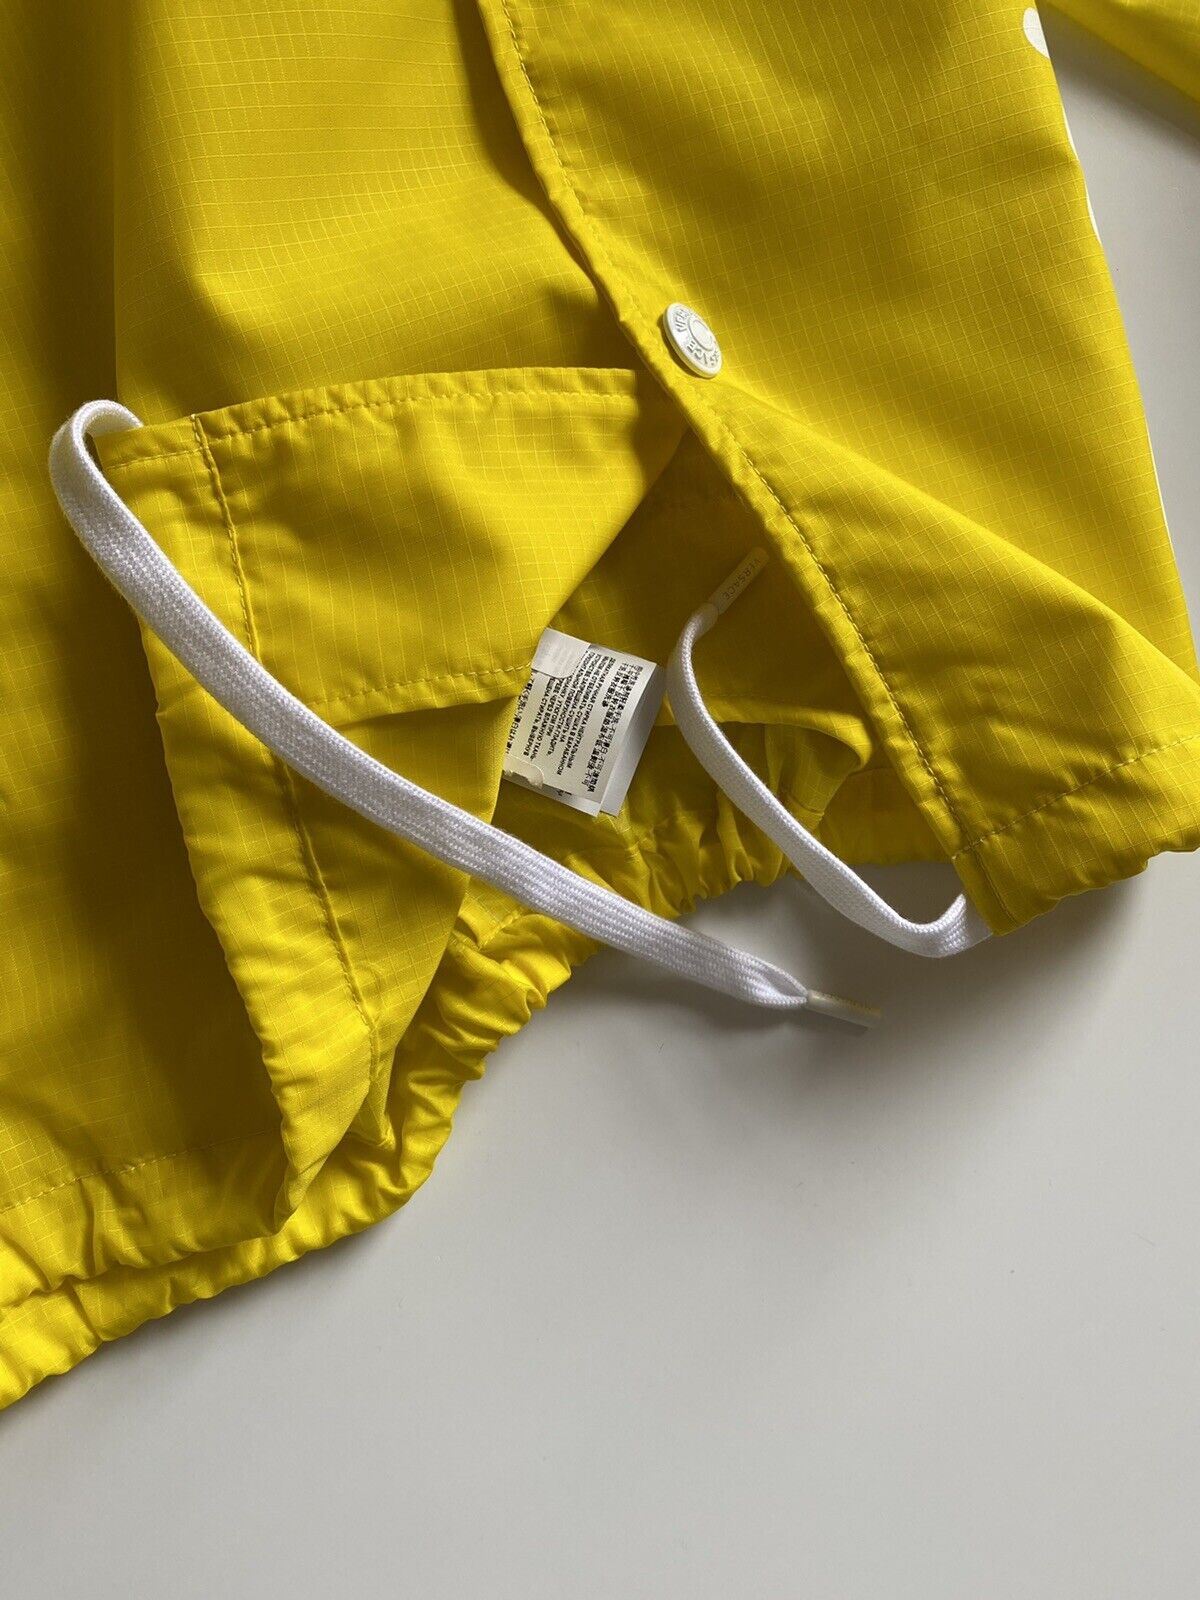 Neu mit Etikett: 1150 $ Versace Herren-Regenmantel mit Knopfleiste in Gelb, Größe 2XL (54 Euro) A85203 